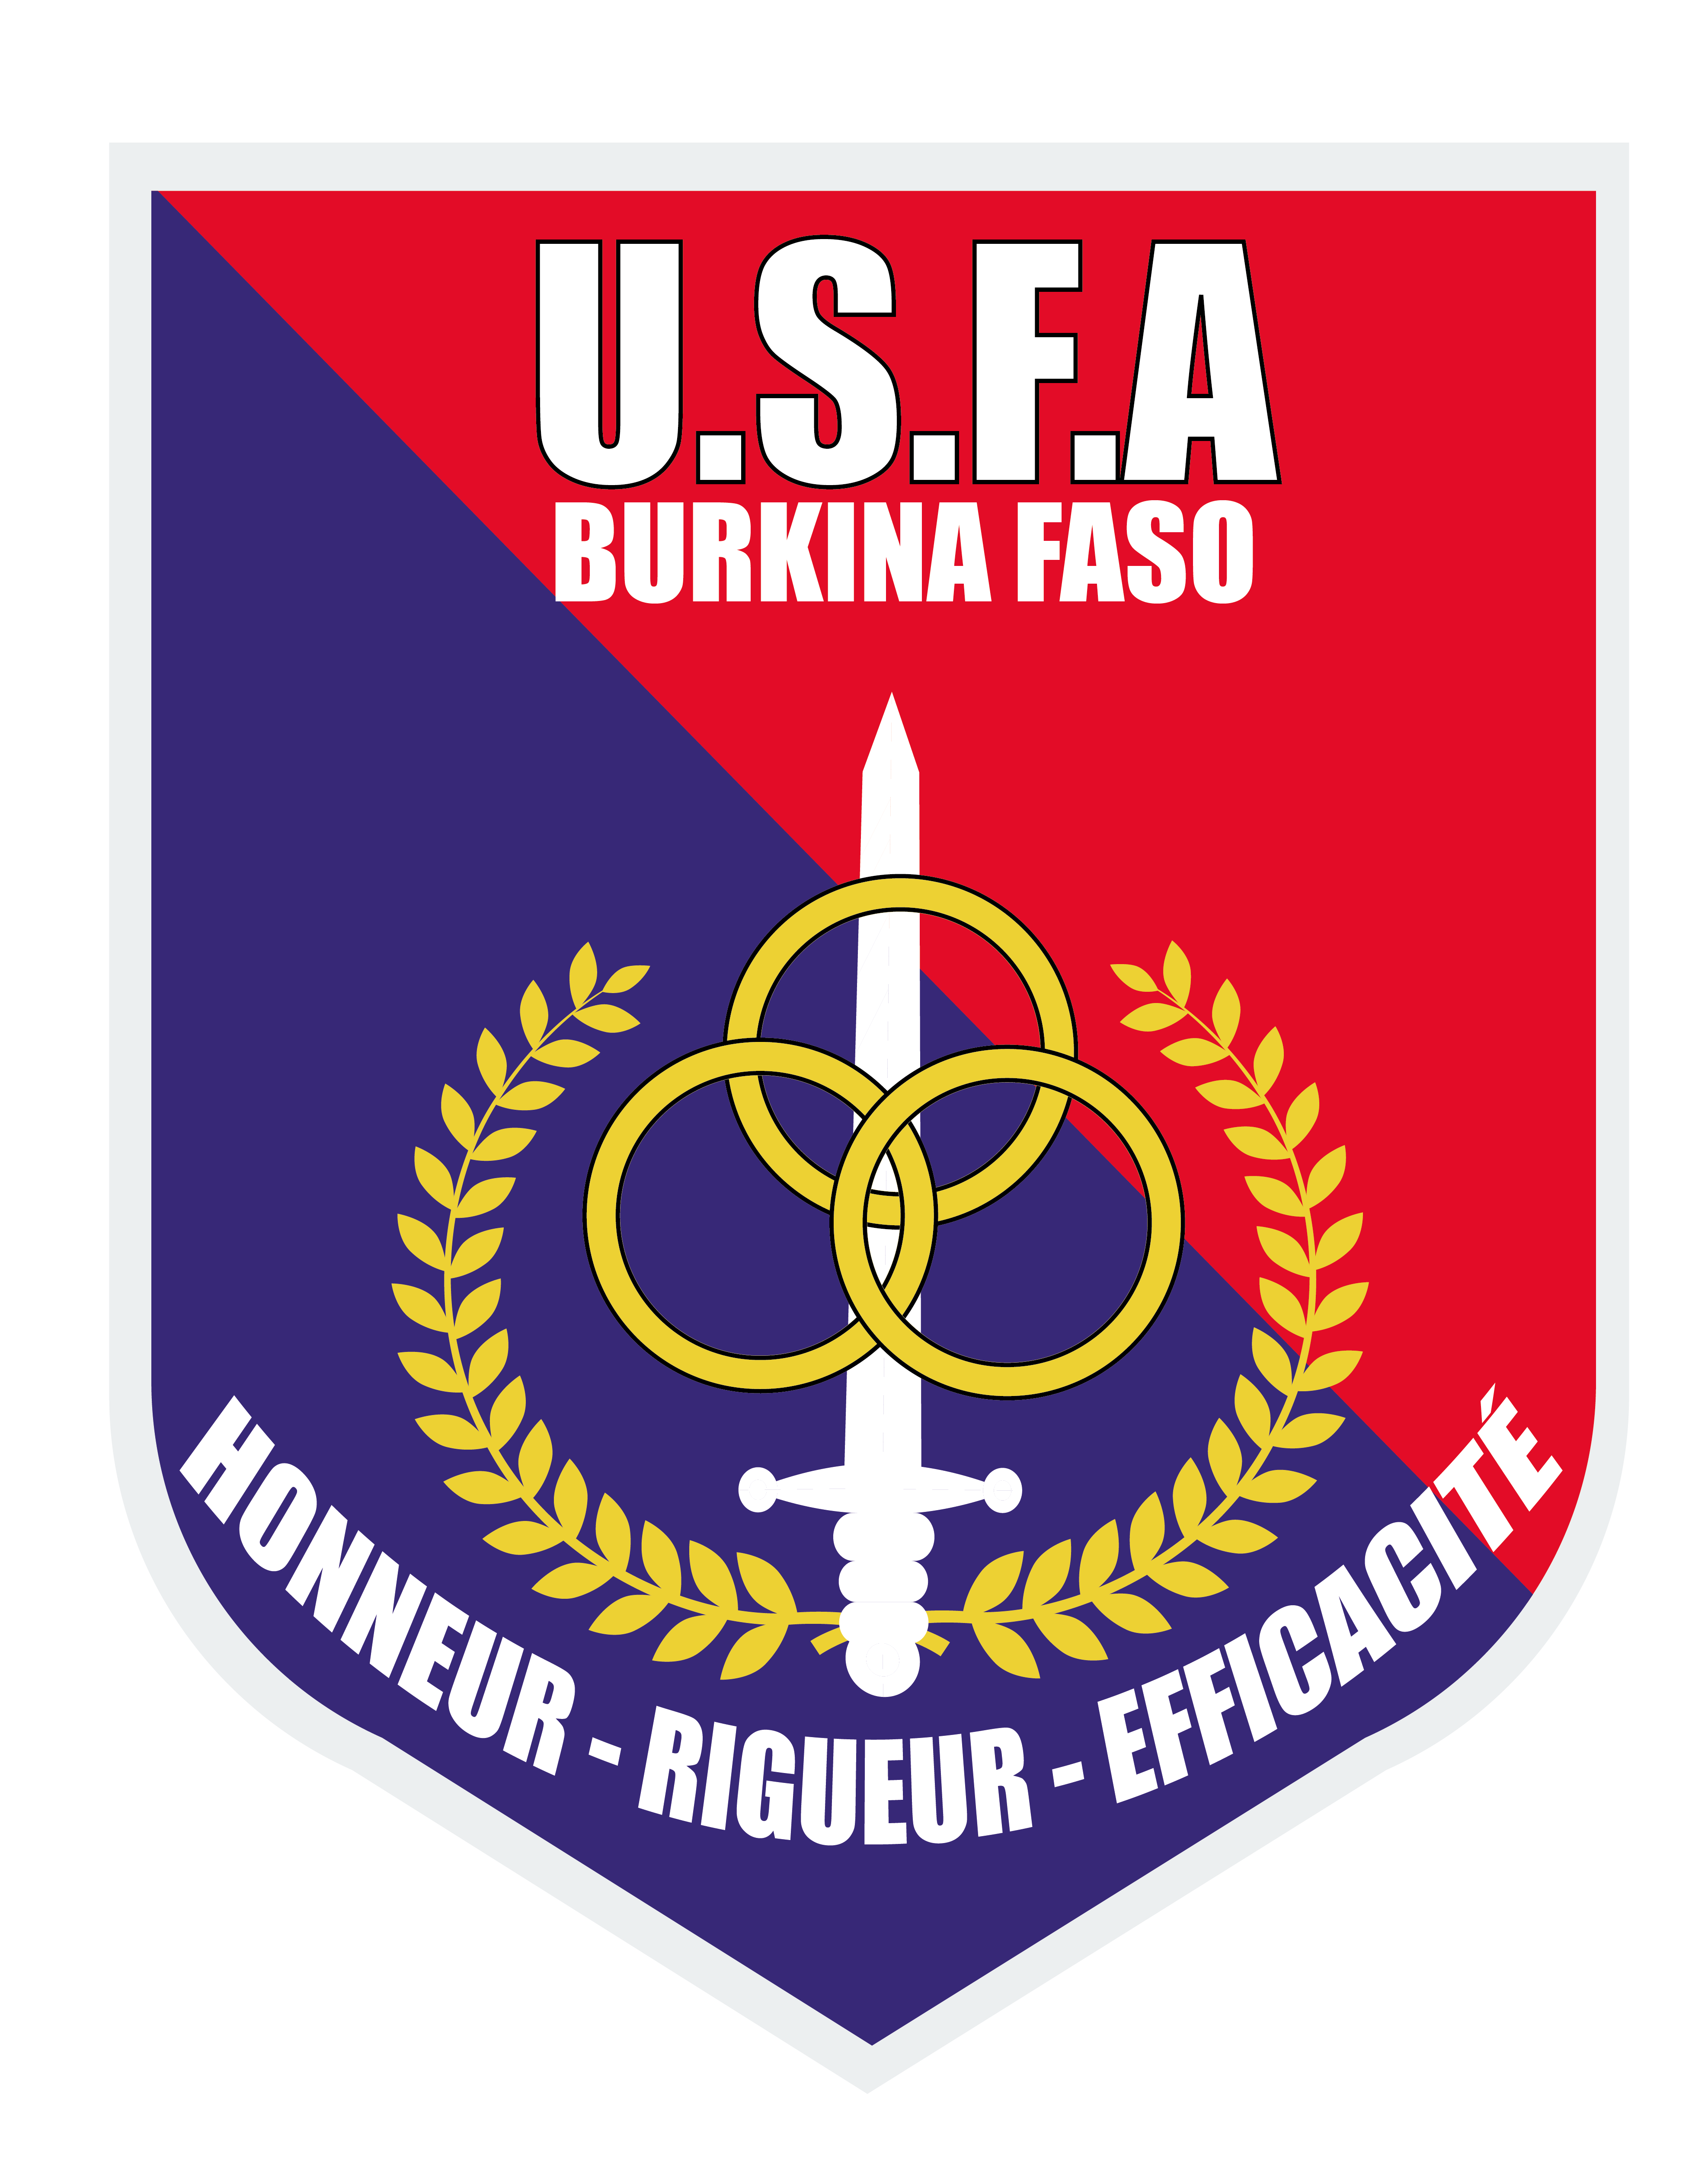 Union Sportive de Ouagadougou